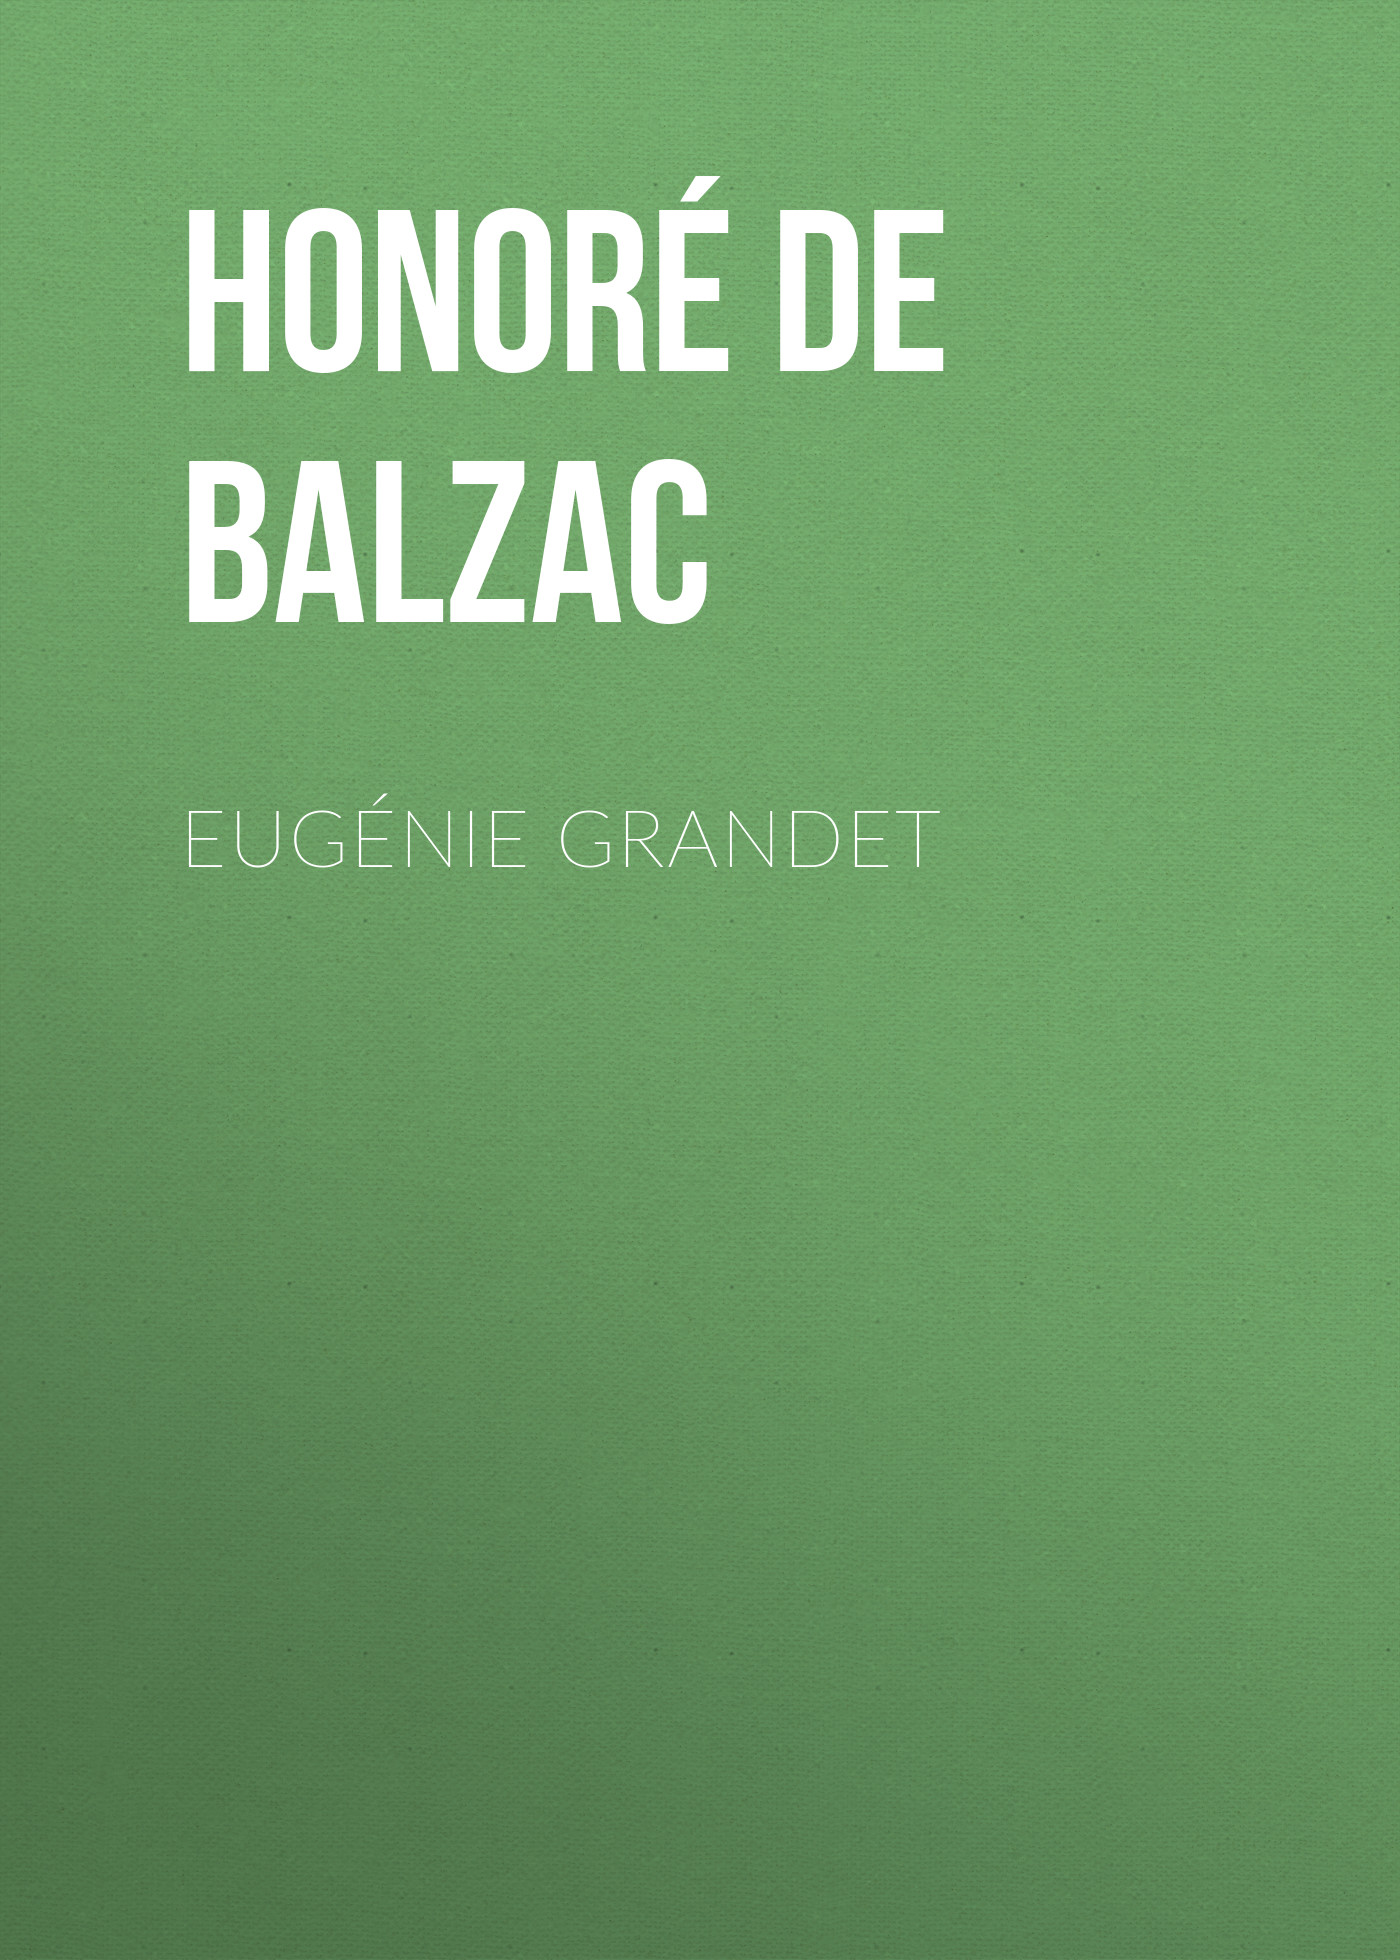 Книга Eugénie Grandet из серии , созданная Honoré Balzac, может относится к жанру Литература 19 века, Зарубежная старинная литература, Зарубежная классика. Стоимость электронной книги Eugénie Grandet с идентификатором 25020619 составляет 0 руб.